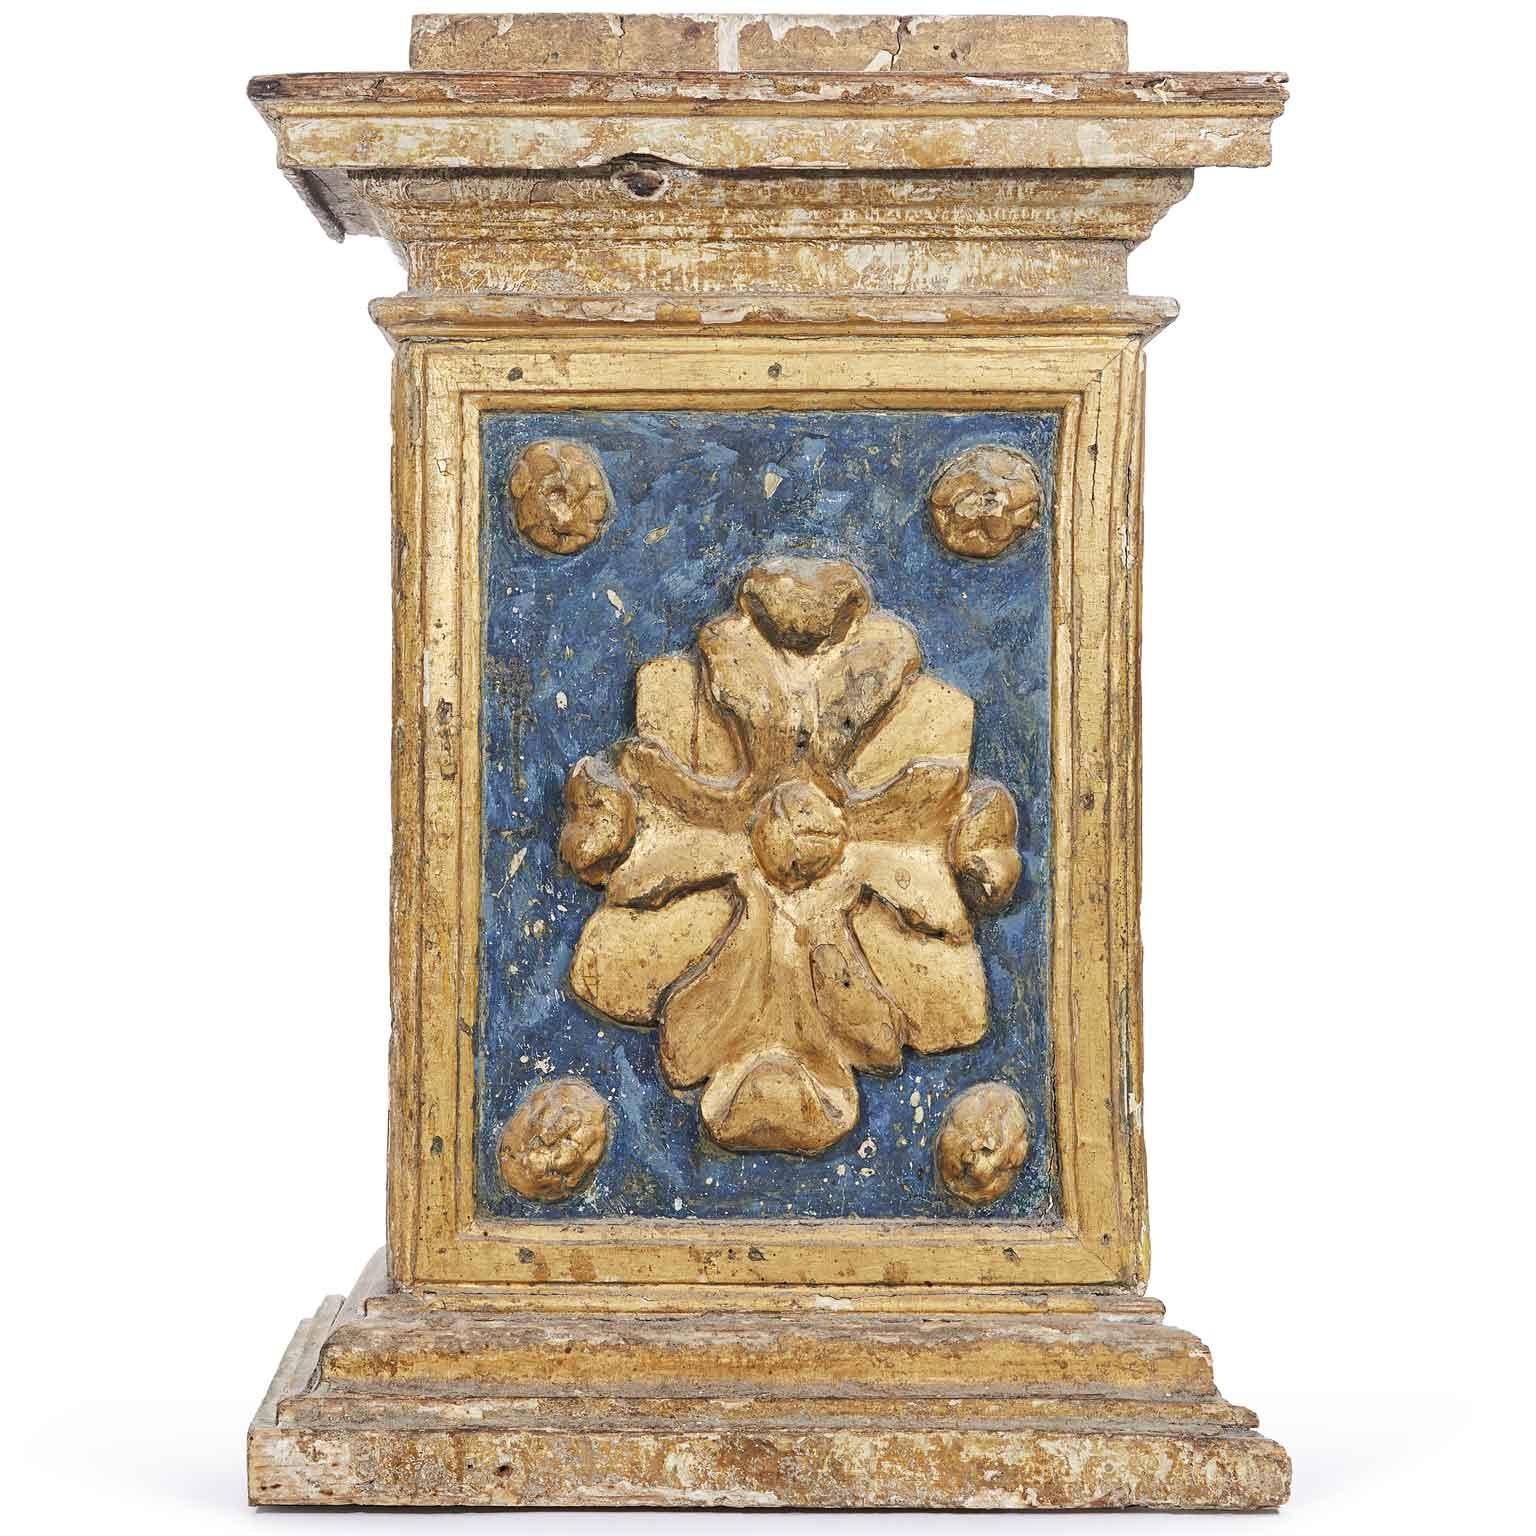 17. Jahrhundert Italienisch Barock architektonischen Basen Paar geschnitzt und Giltwood Elemente mit blauen Malerei Details, ein Paar von antiken dekorativen architektonischen Elementen wahrscheinlich aus einem Altar Möbel, geeignet, um zwei